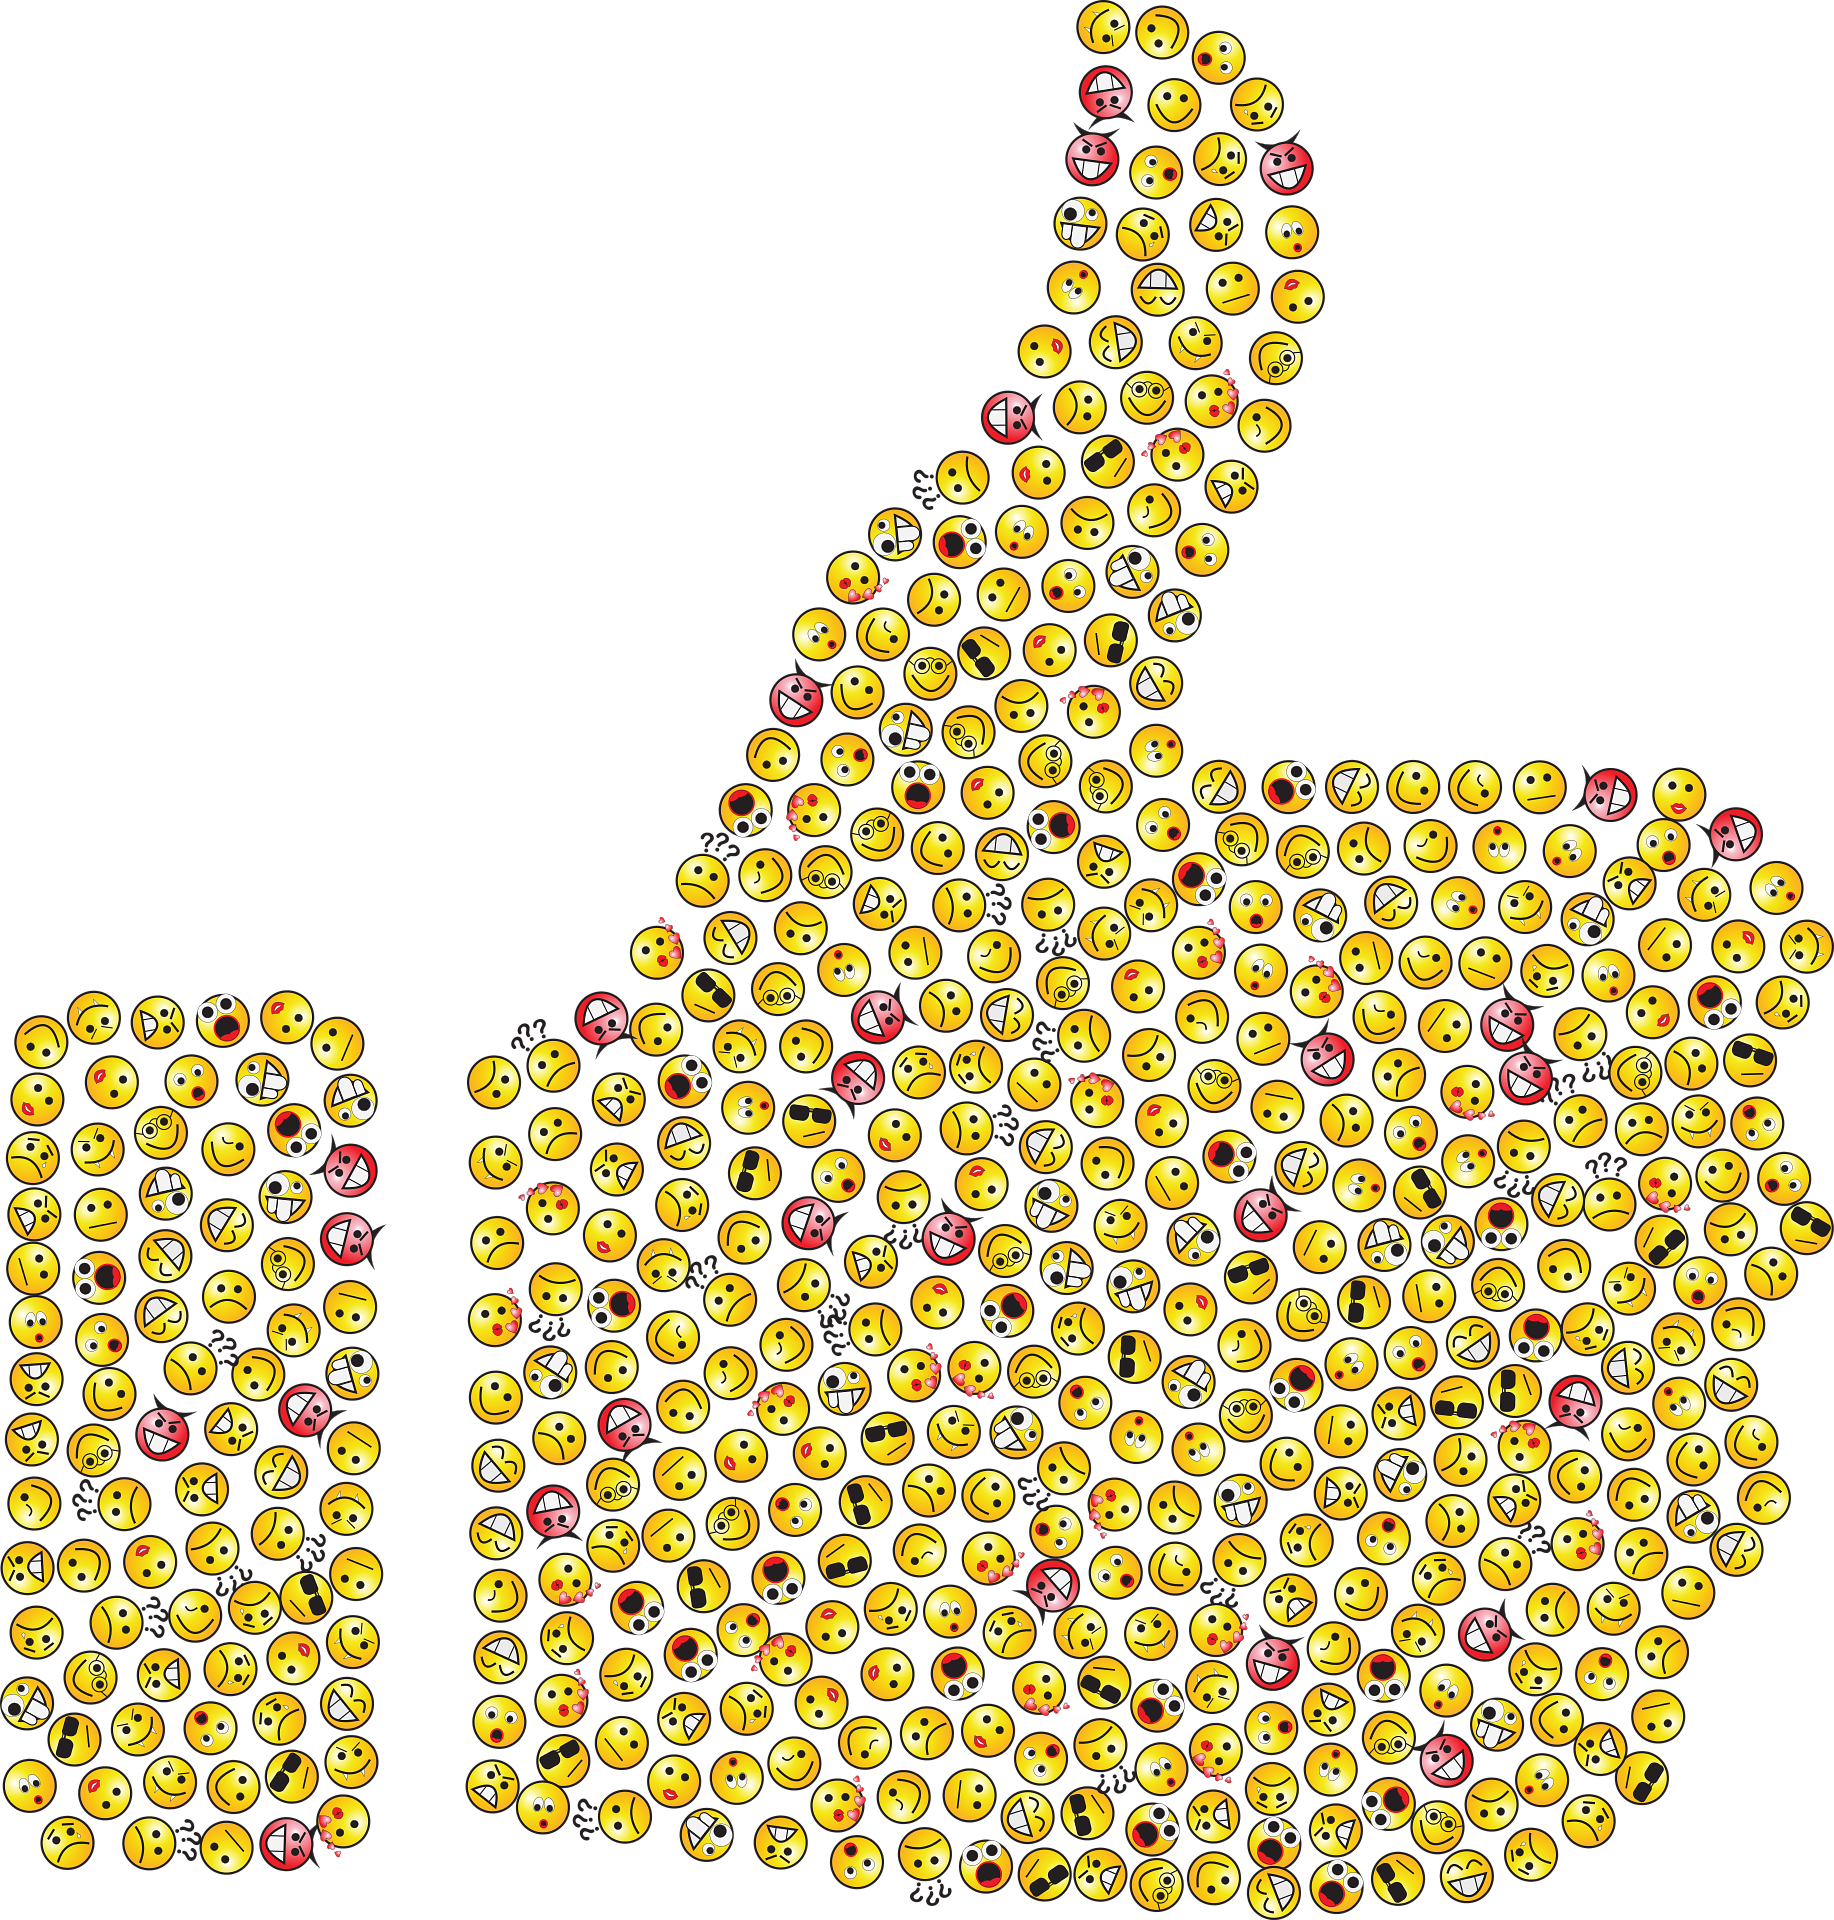 Bild: «Daumen hoch»-Emoji, das aus vielen anderen gelben Emojis gebildet wird